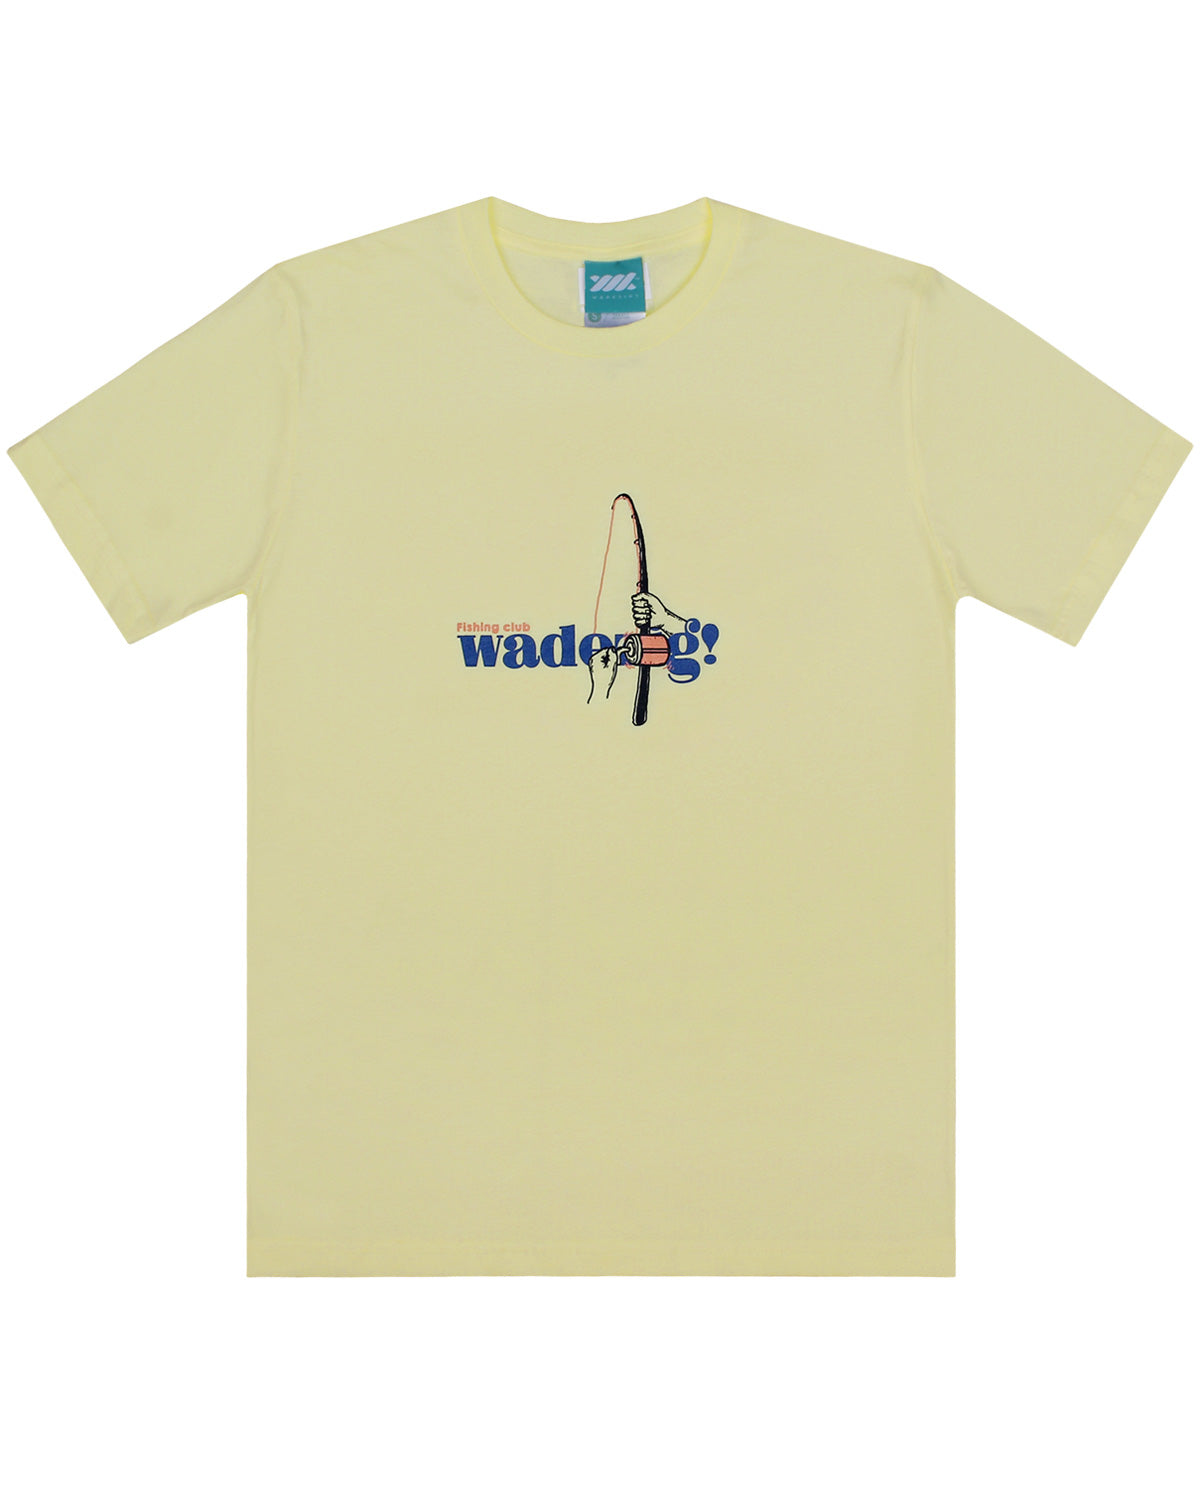 Wadezig! T-Shirt - Fisherman Yellow